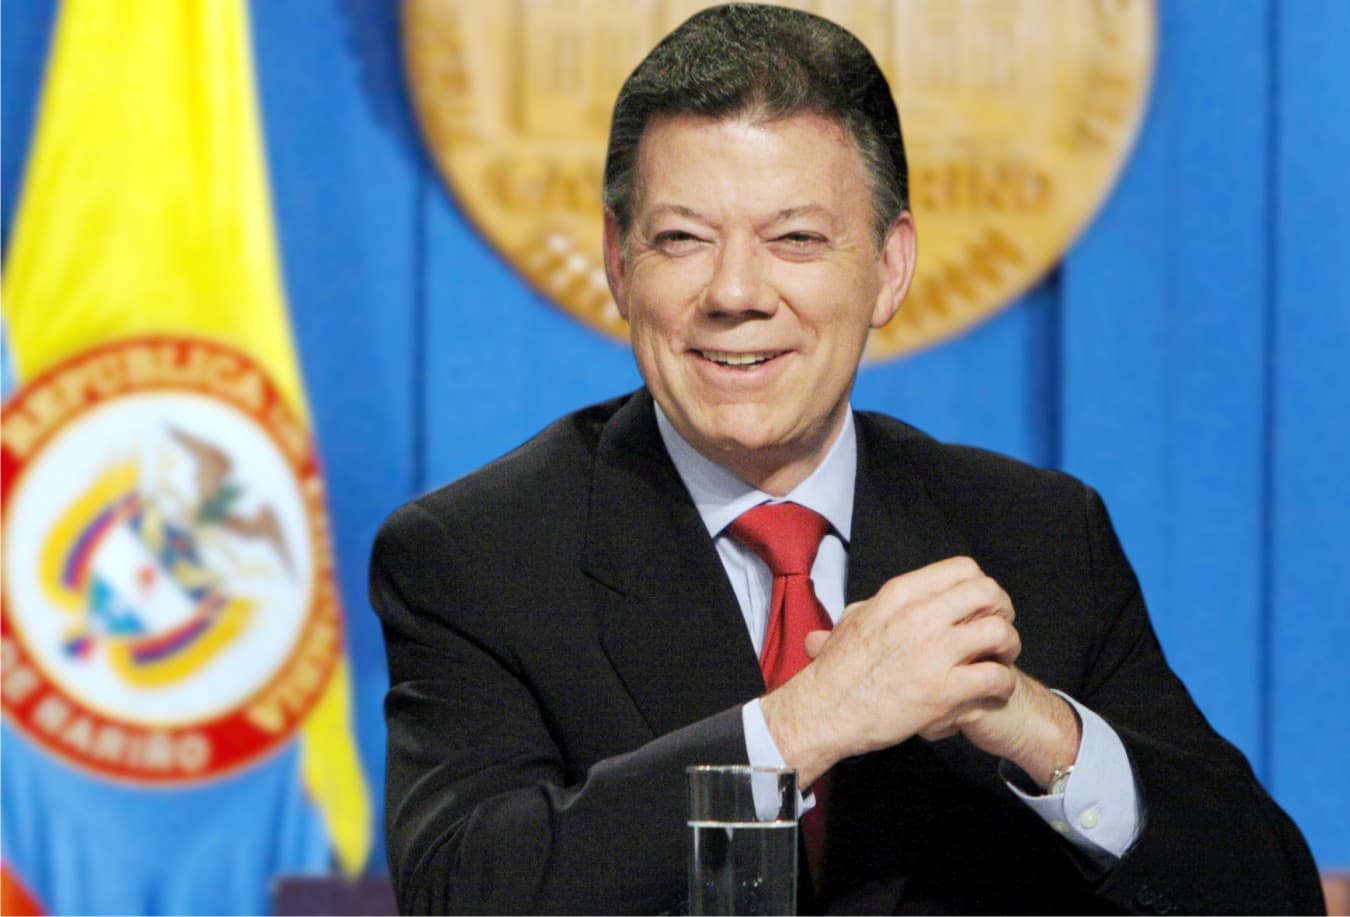 Átadták a Nobel-békedíjat a kolumbiai elnöknek